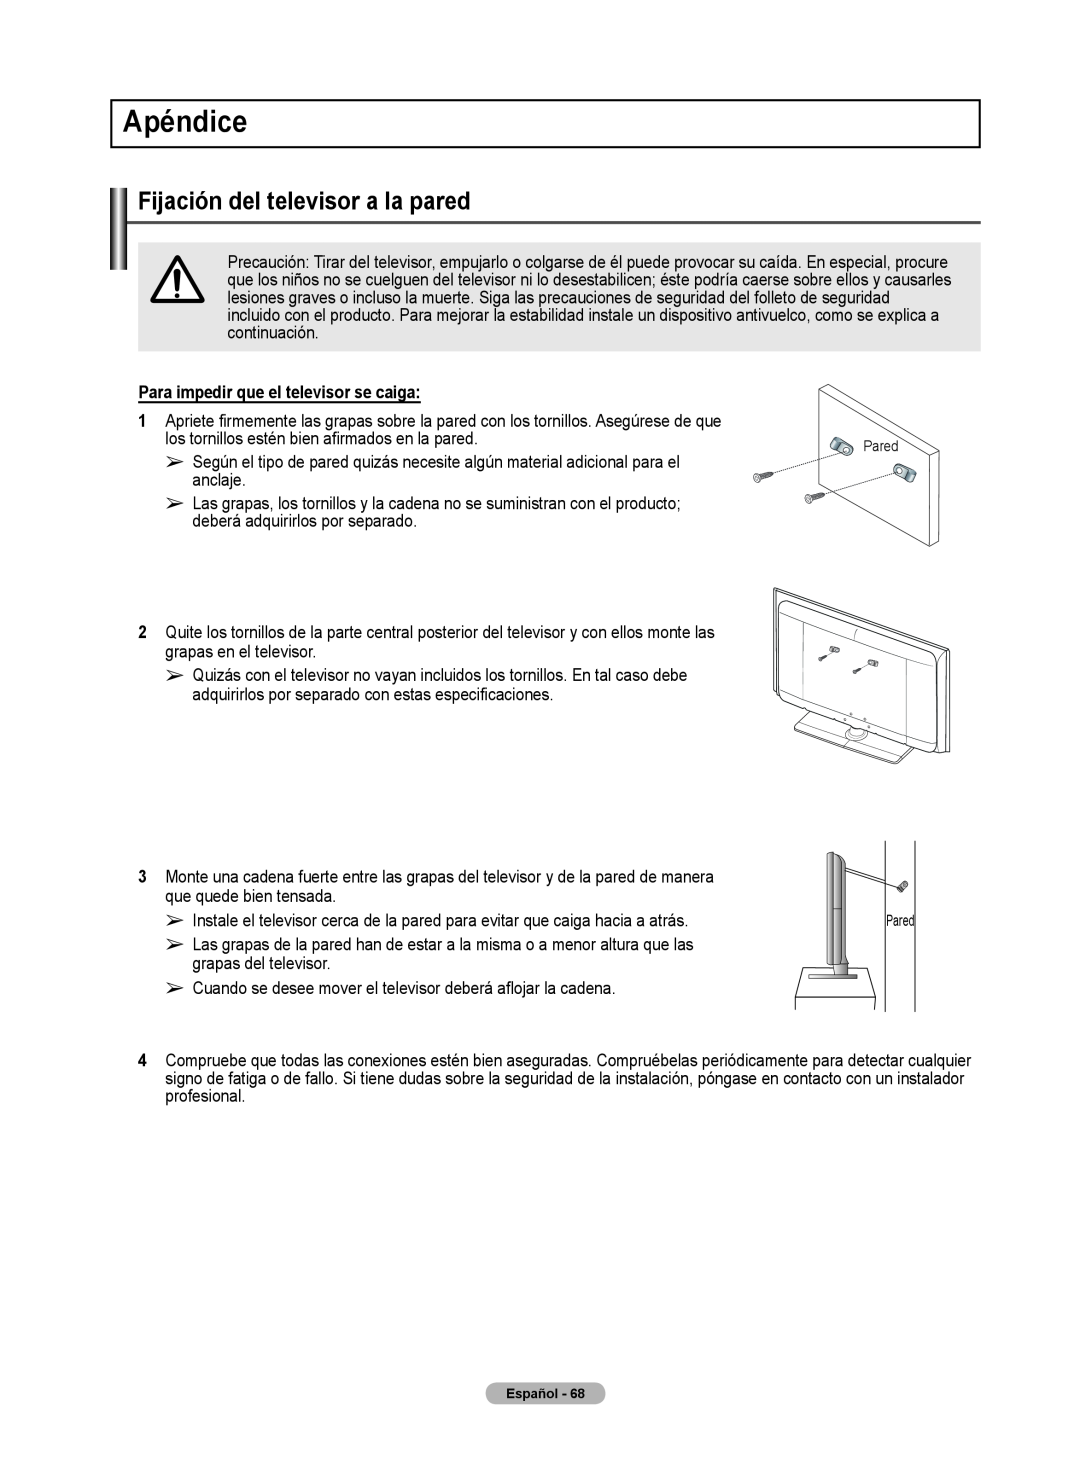 Samsung 460 user manual Apéndice, Fijación del televisor a la pared, Para impedir que el televisor se caiga 